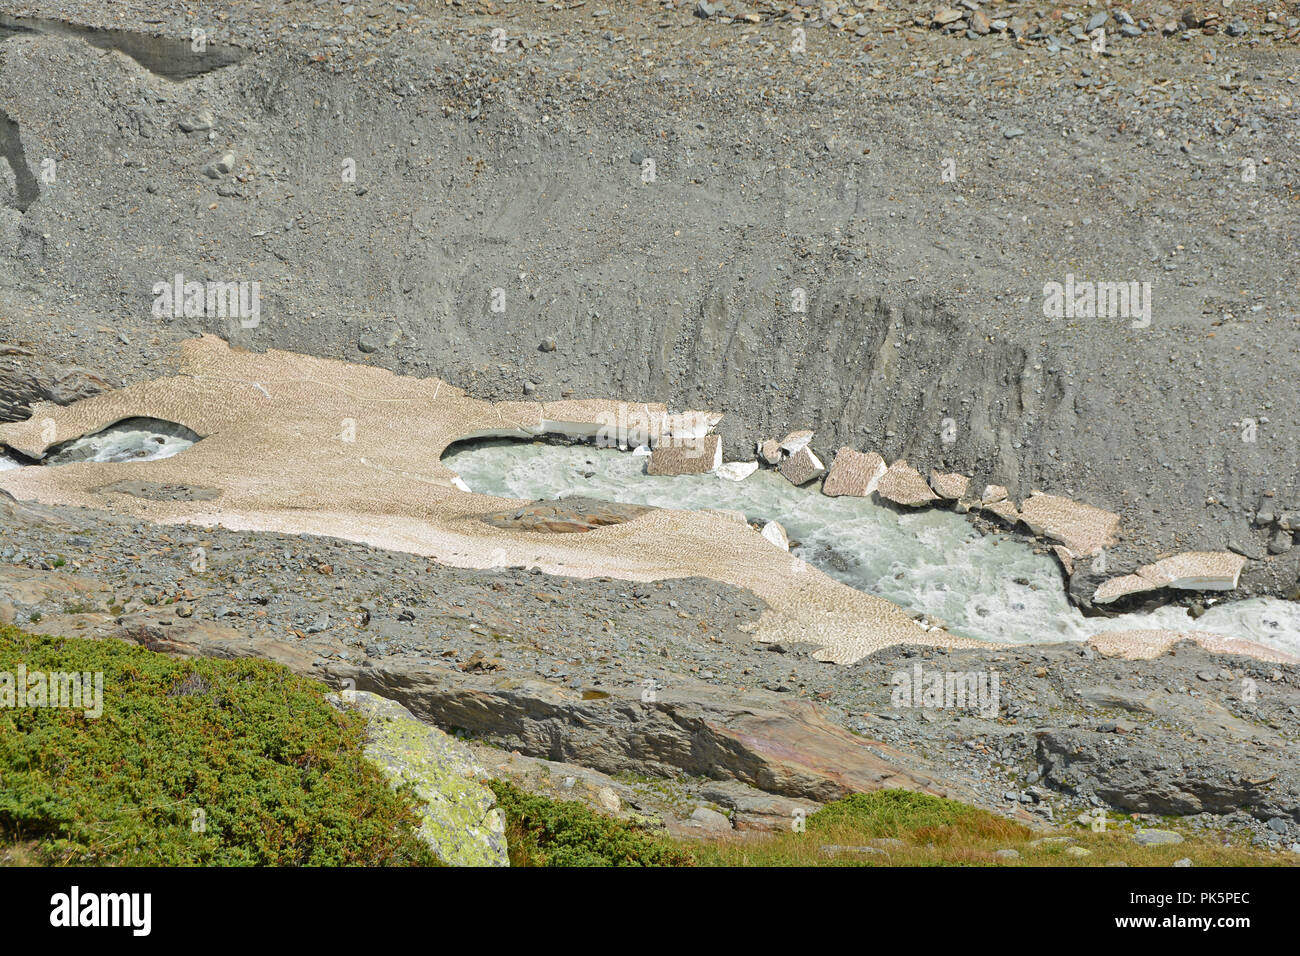 Un ghiacciaio tagli di flusso attraverso vecchi ponti di neve in montagna. In alto a sinistra parti del ghiacciaio può essere visto Foto Stock